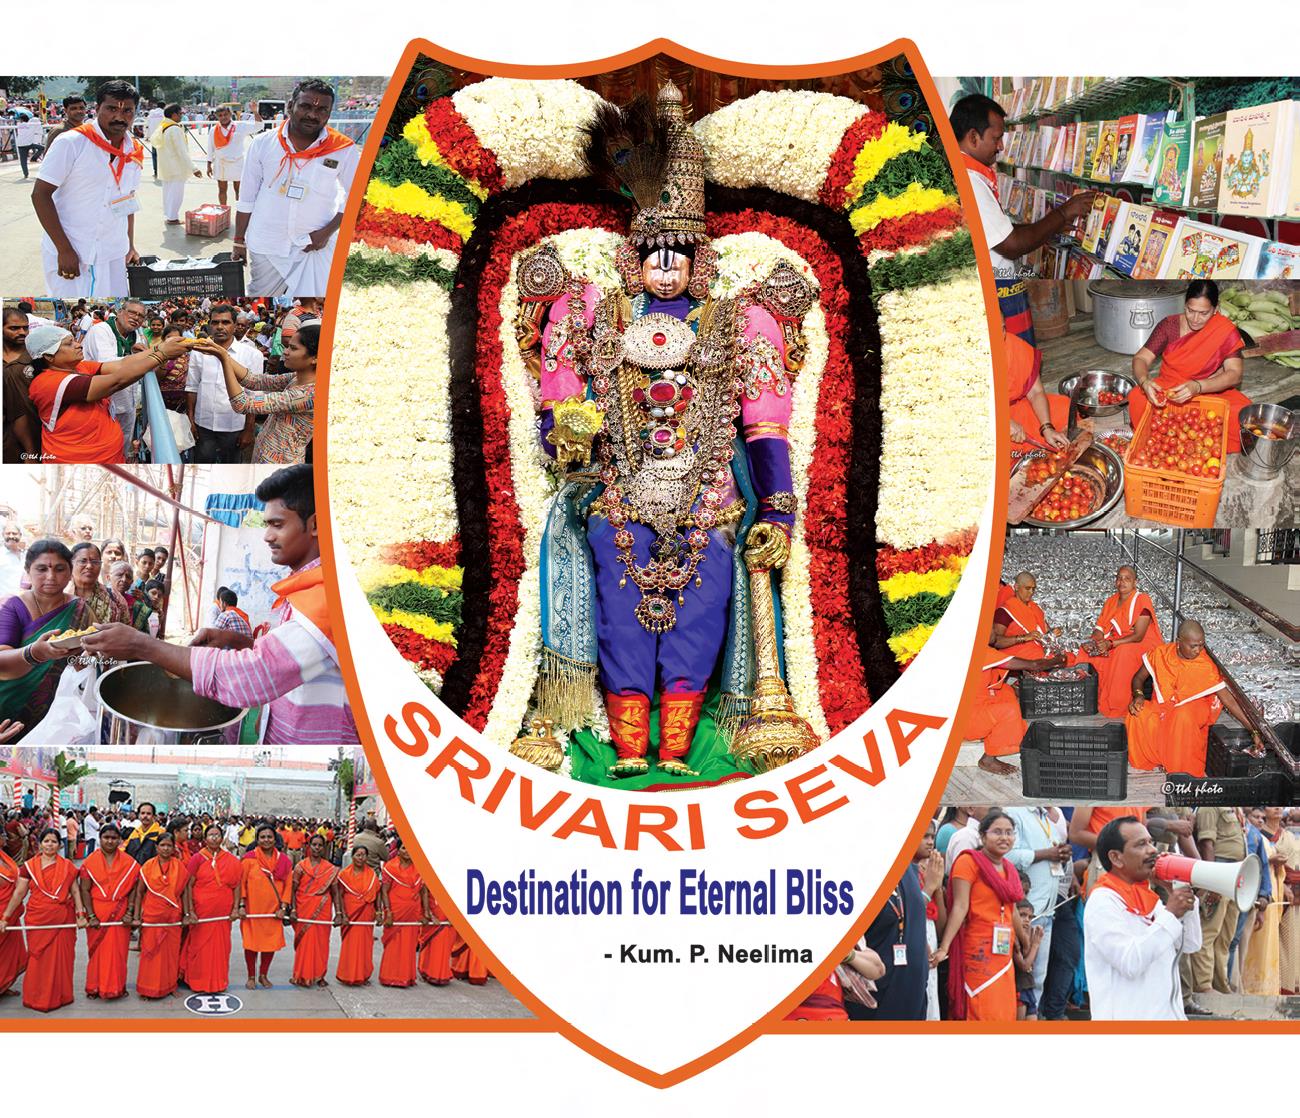 SriVari Seva - Tirumala Tirupati Devasthanams(TTD)